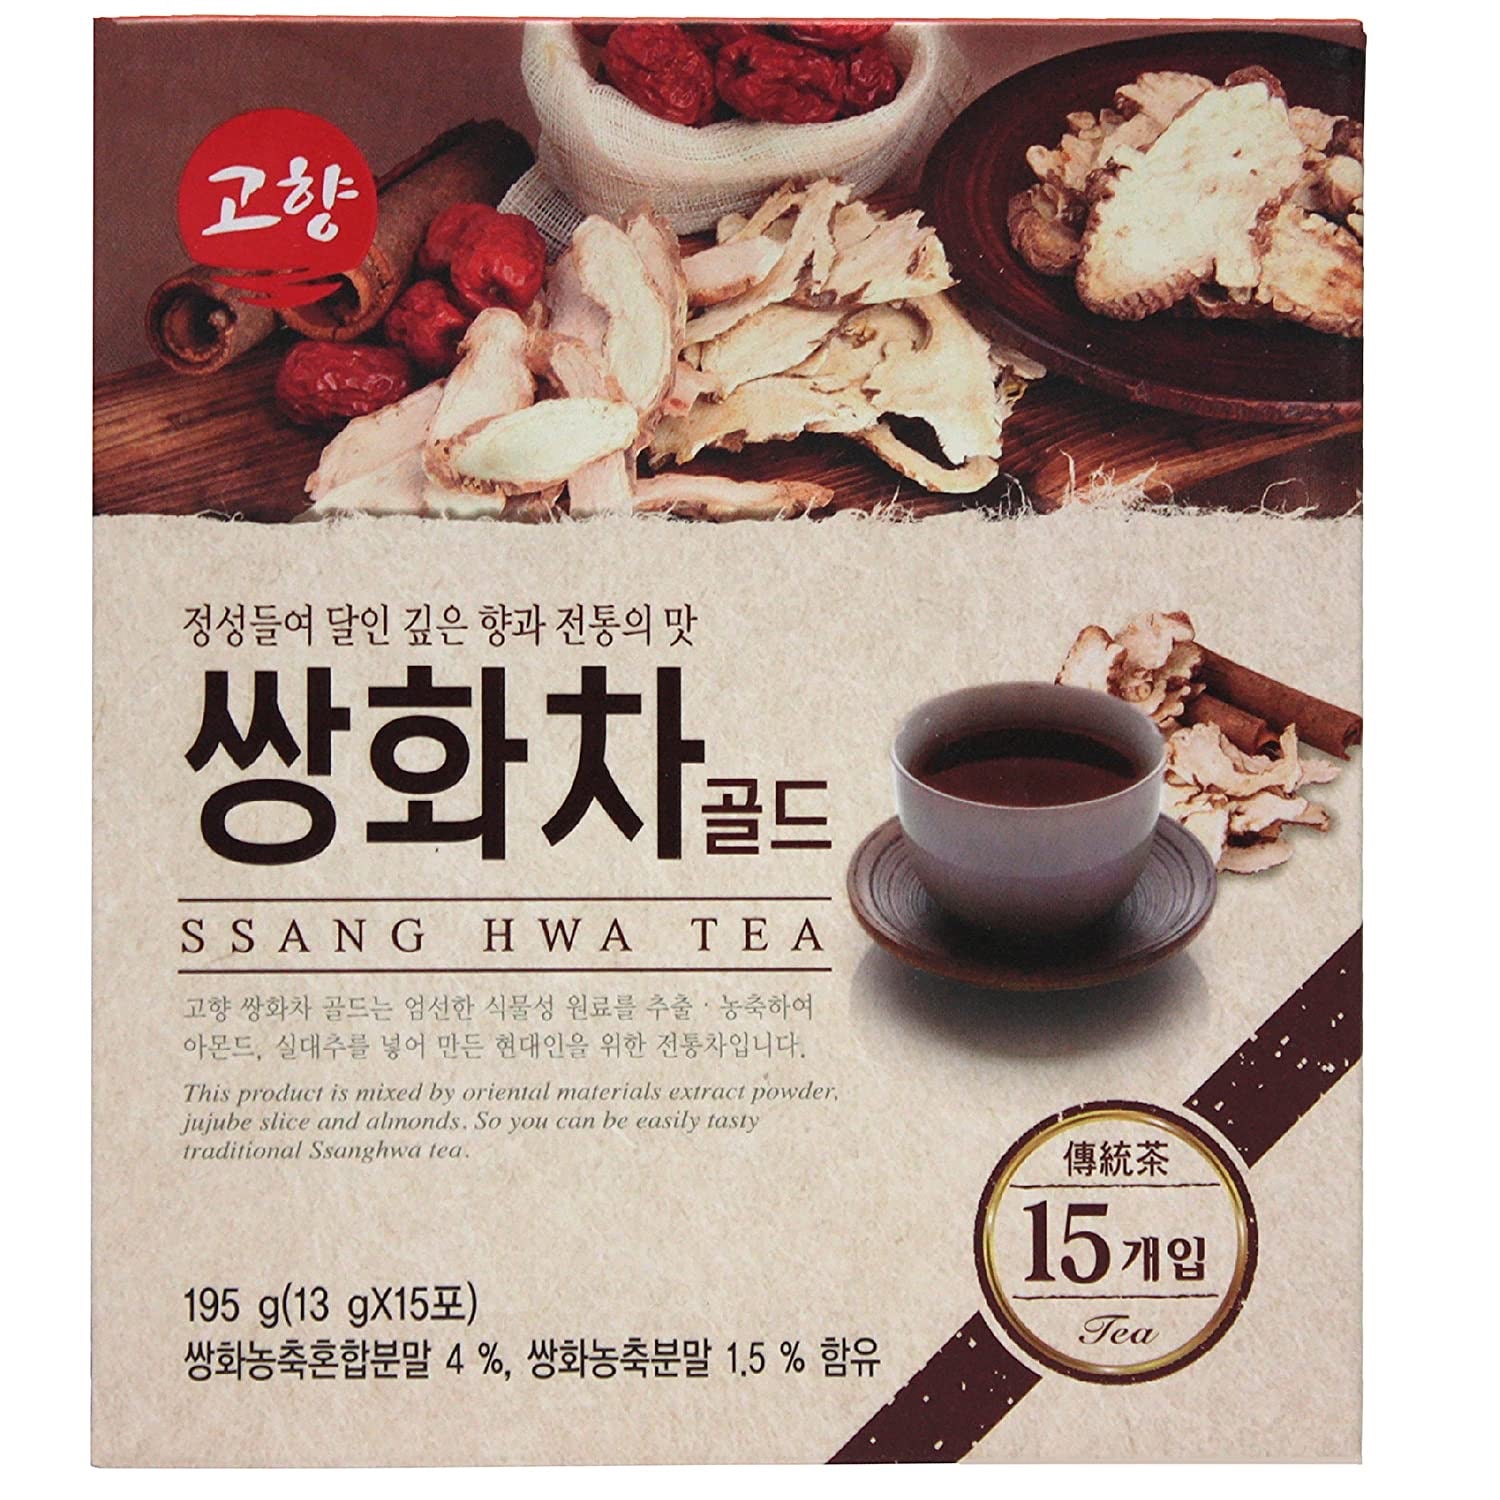 Korean One Ginseng Ssang Hwa Tea